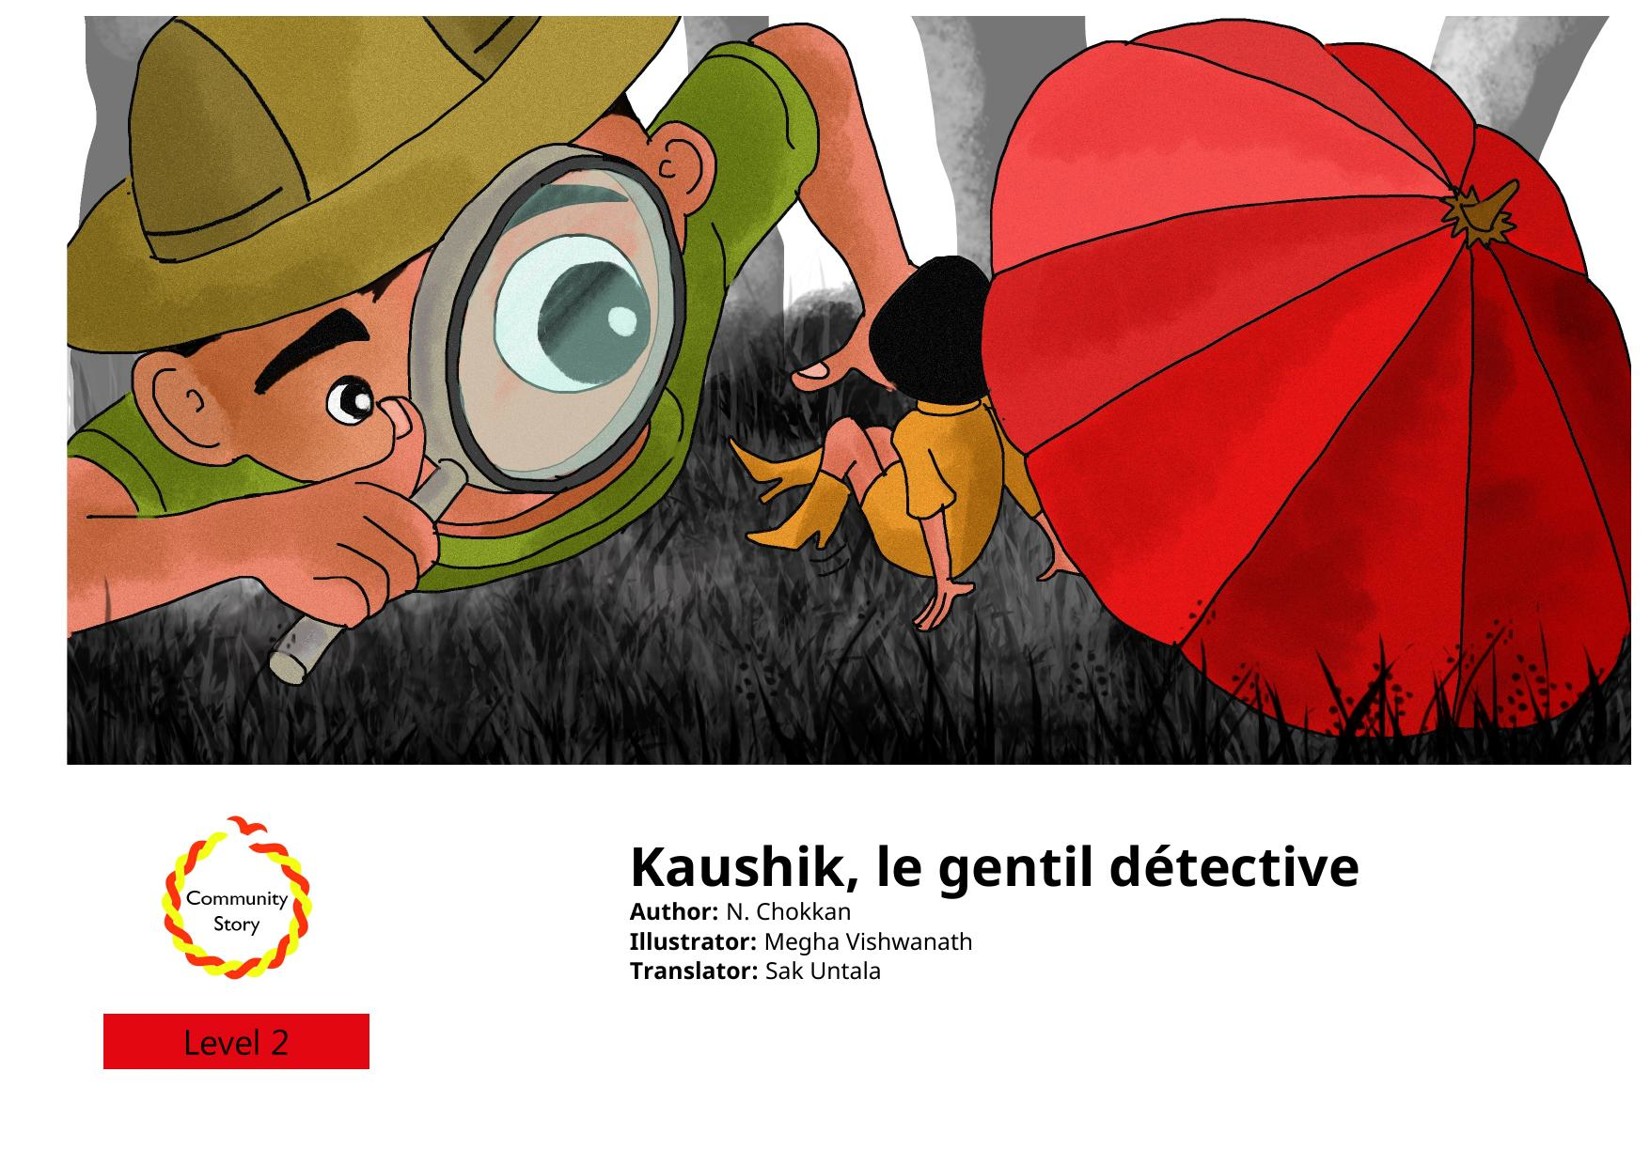 Kaushik, le gentil détective